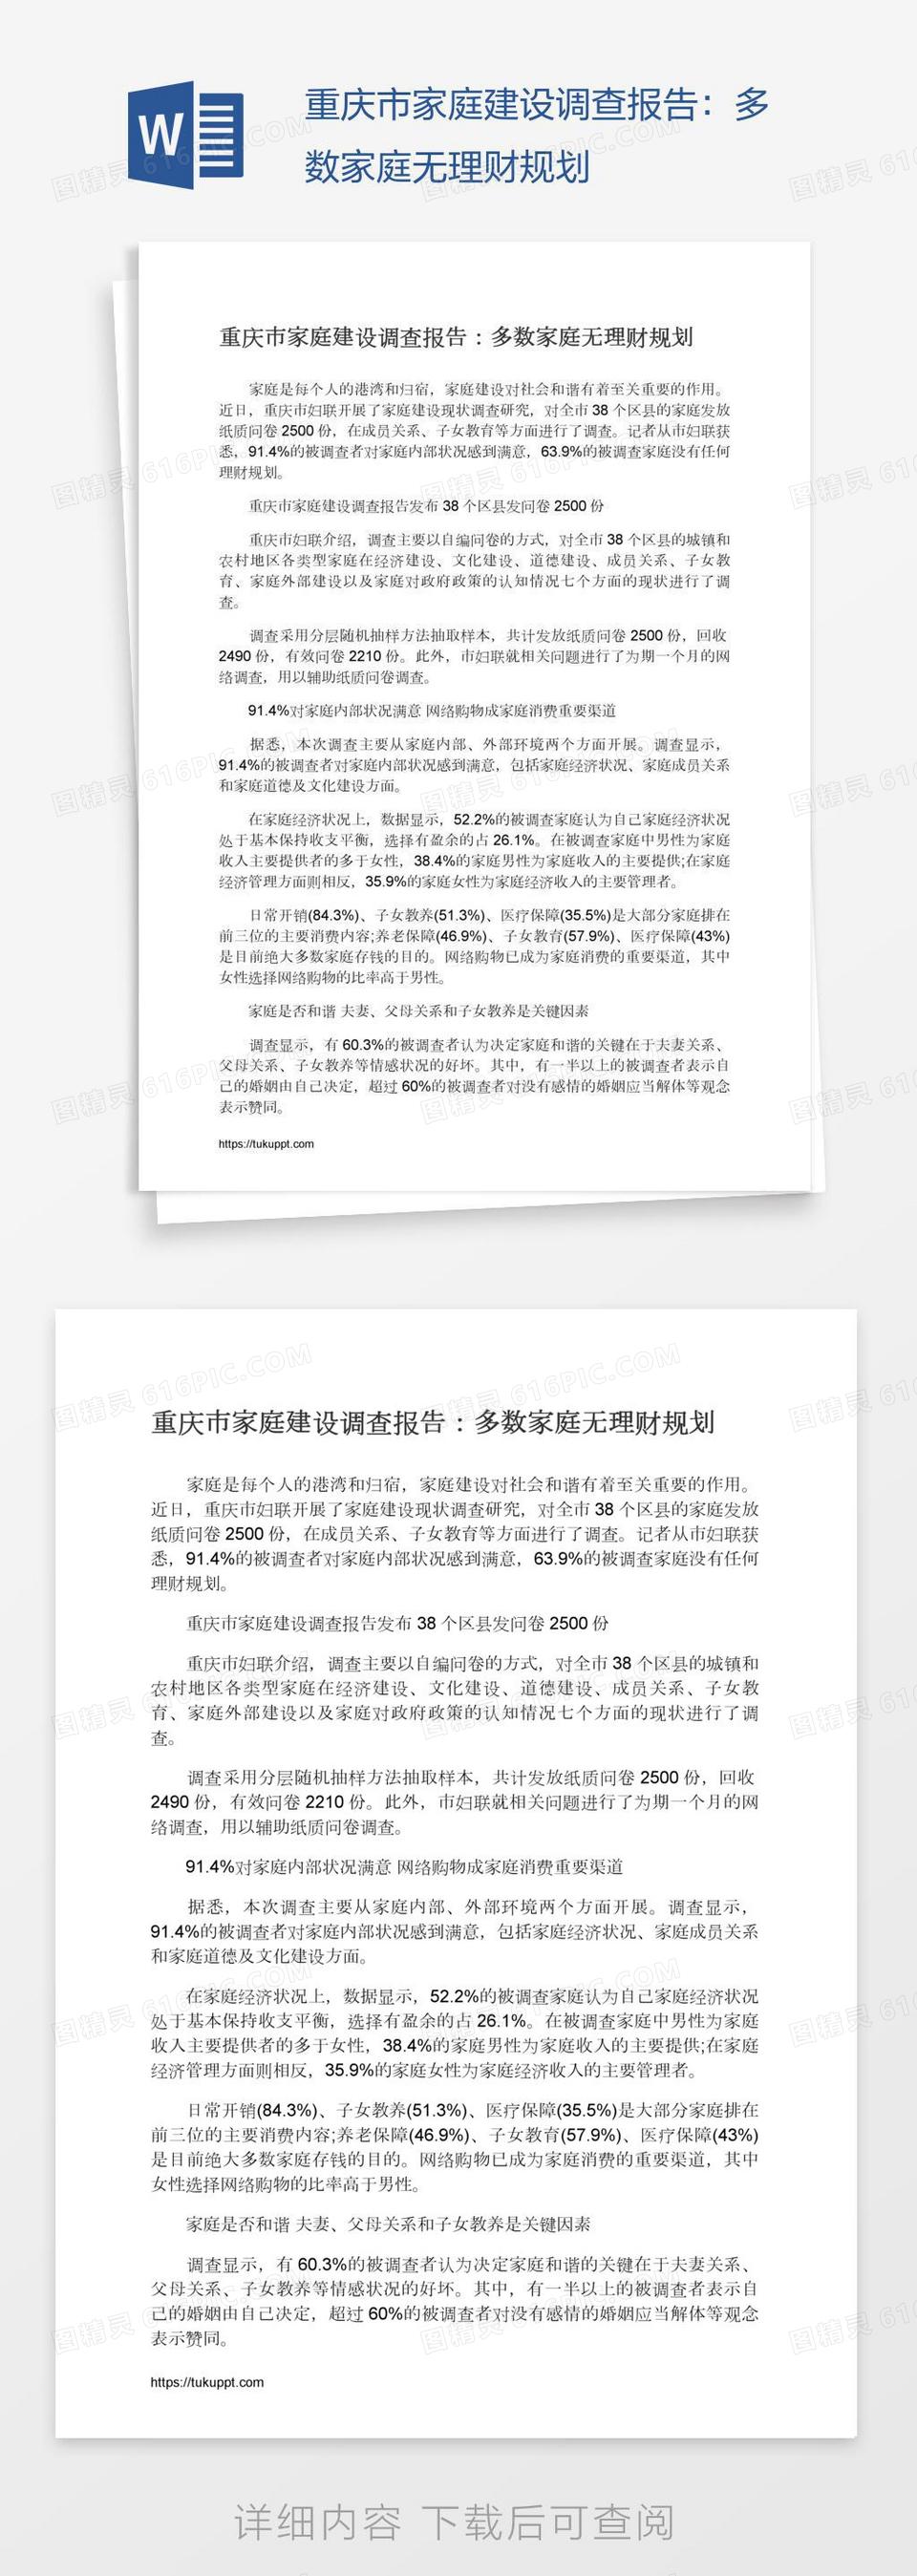 重庆市家庭建设调查报告：多数家庭无理财规划